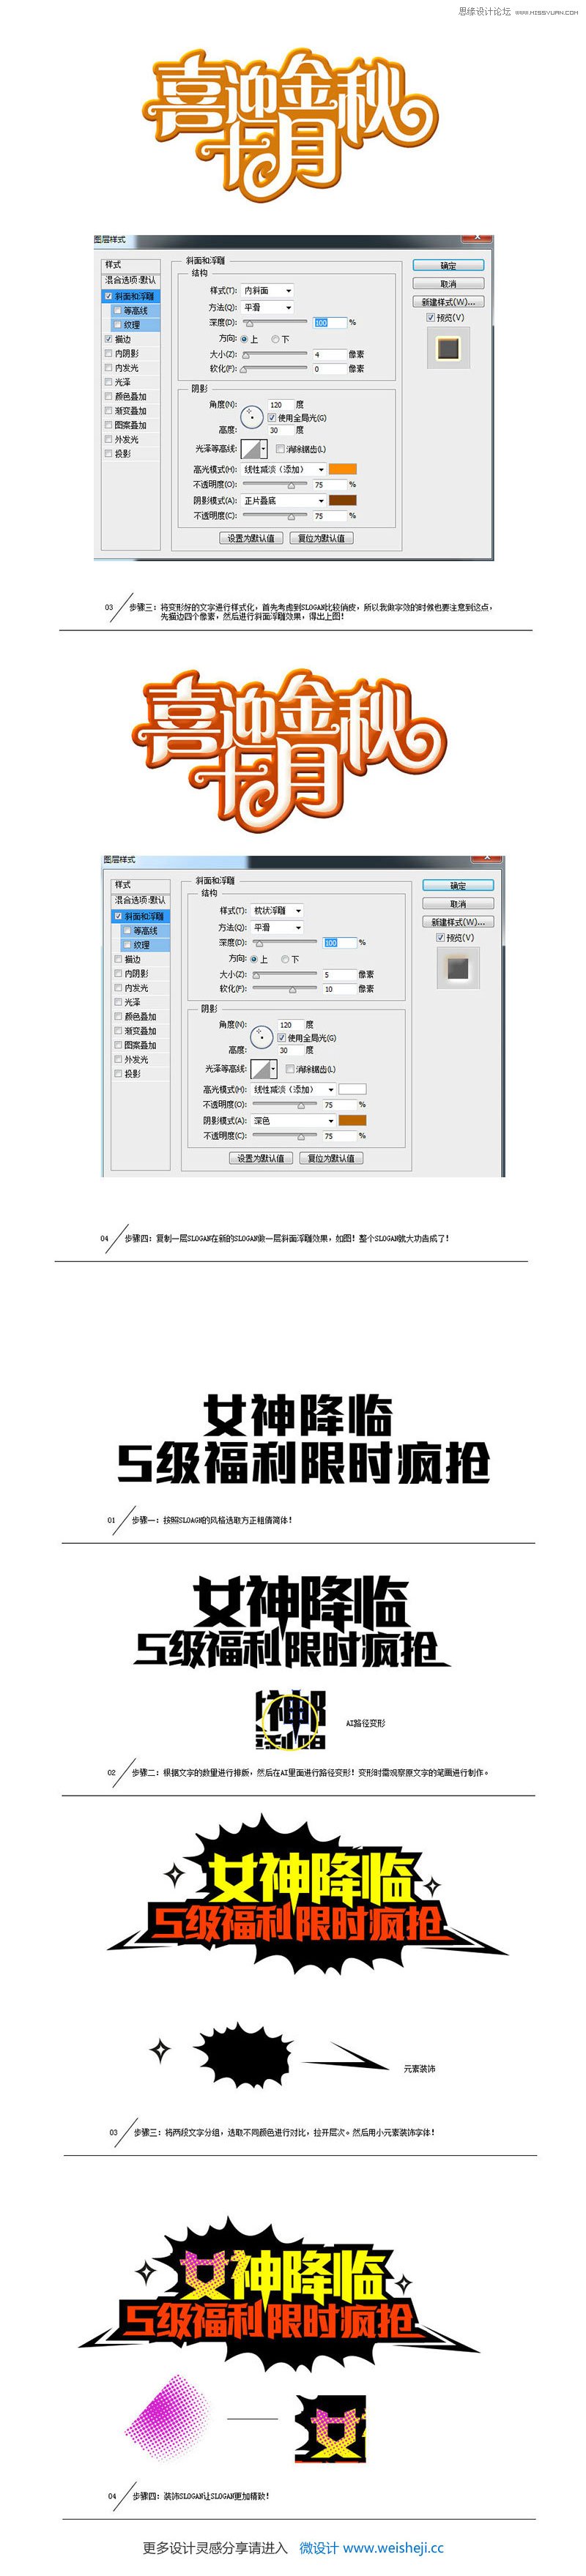 中文海报字体设计心得技巧4